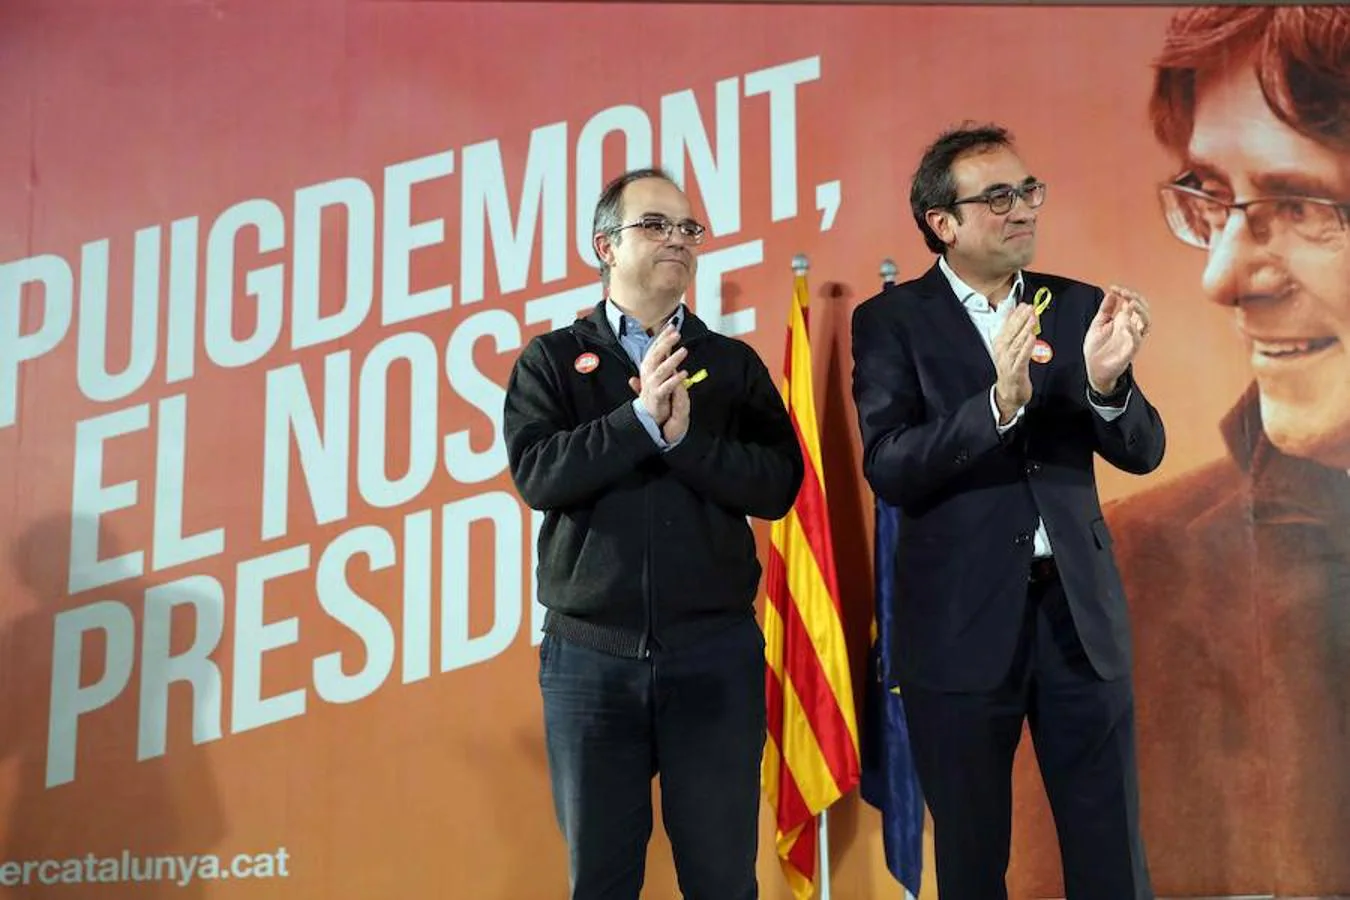 Los exconsellers y candidatos de Junts per Catalunya Jordi Turull y Josep Rull durante la rueda de prensa que han ofrecido hoy en Barcelona después de salir de prisión ayer por la tarde. 